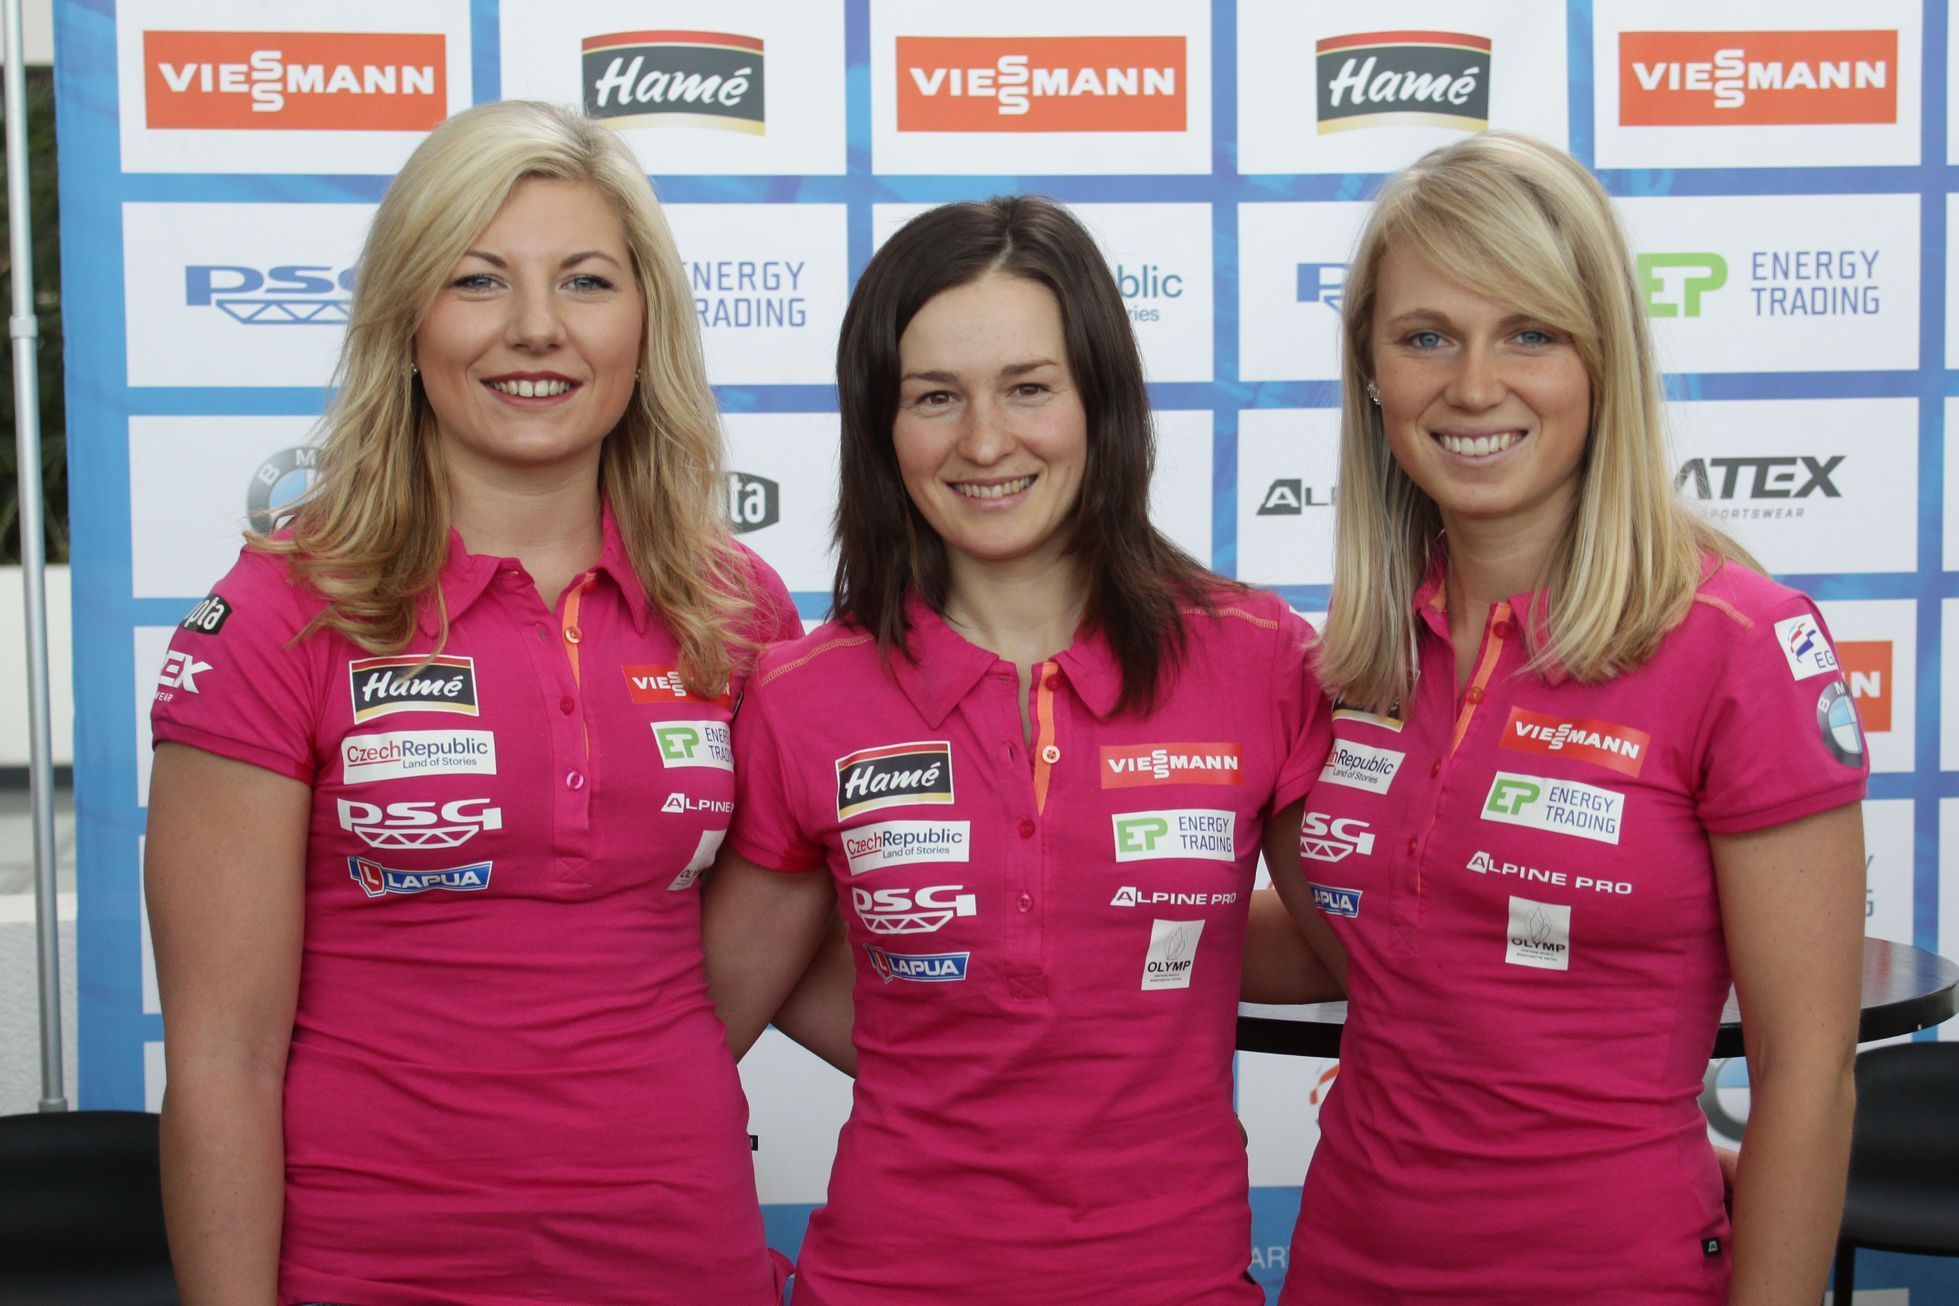 (zleva) Lucie Charvátová, Veronika Vítková, Eva Puskarčíková, biatlon, TK před sezonou